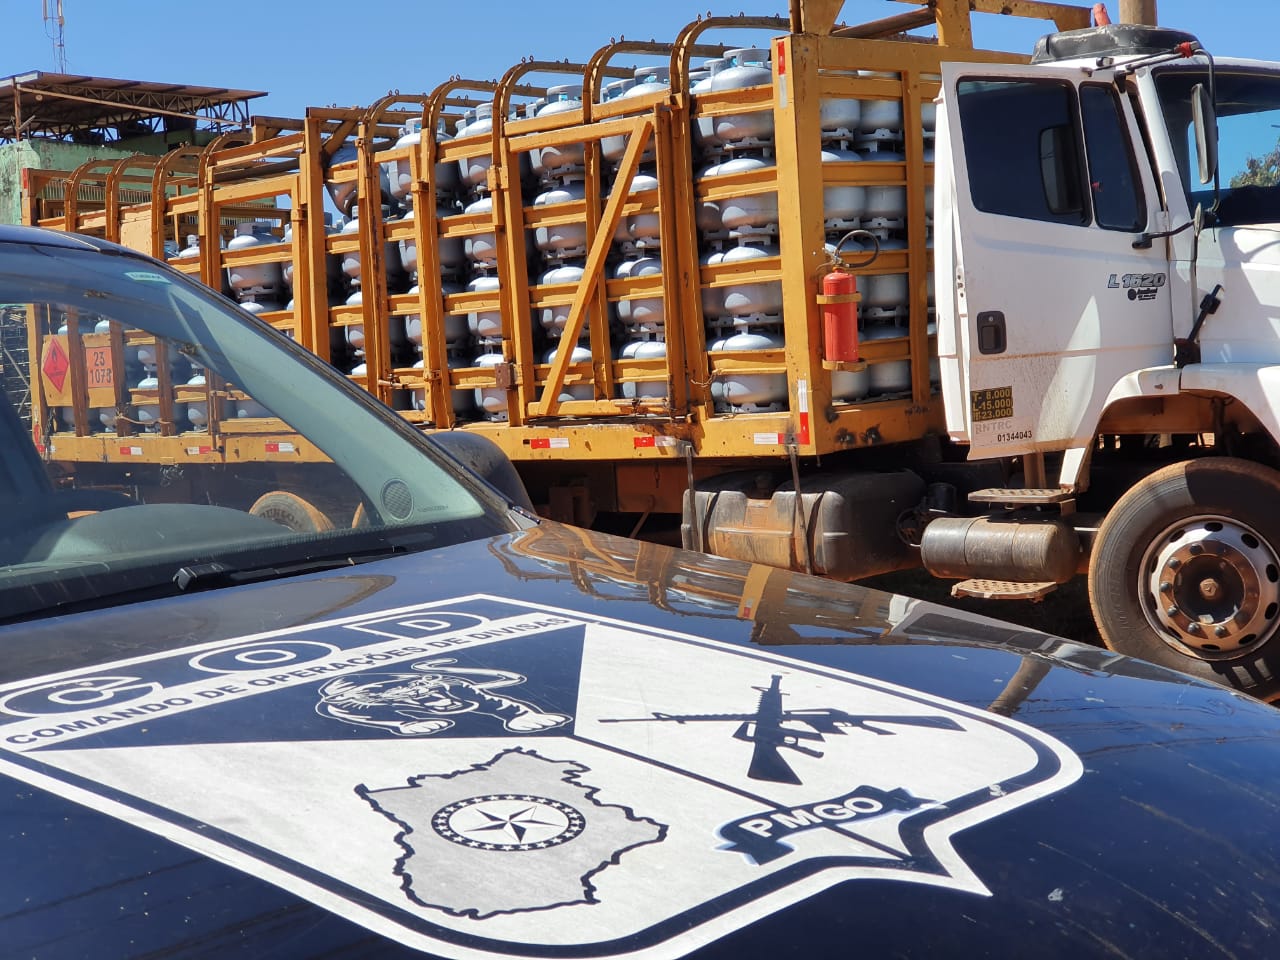 Uma operação conjunta entre a PM de Goiás e Distrito Federal (DF) recuperou uma carga roubada com 560 botijões de gás avaliados em R$ 100 mil. (Foto: divulgação)